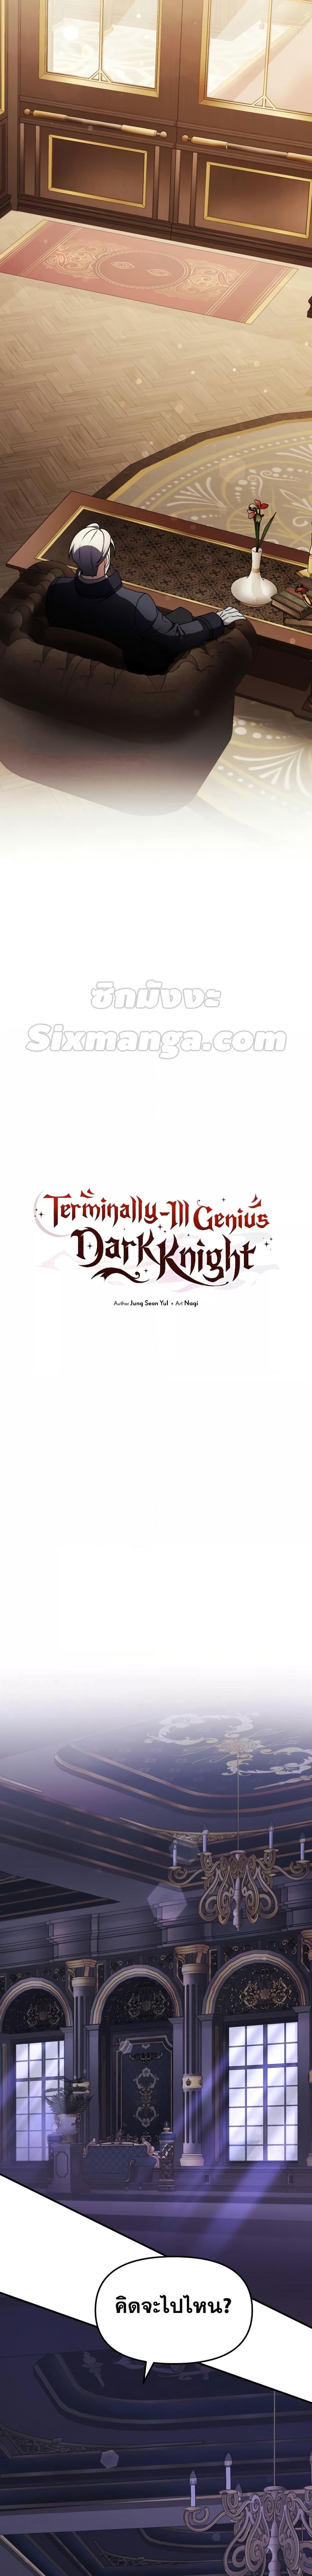 Terminally Ill Genius Dark Knight 19 12